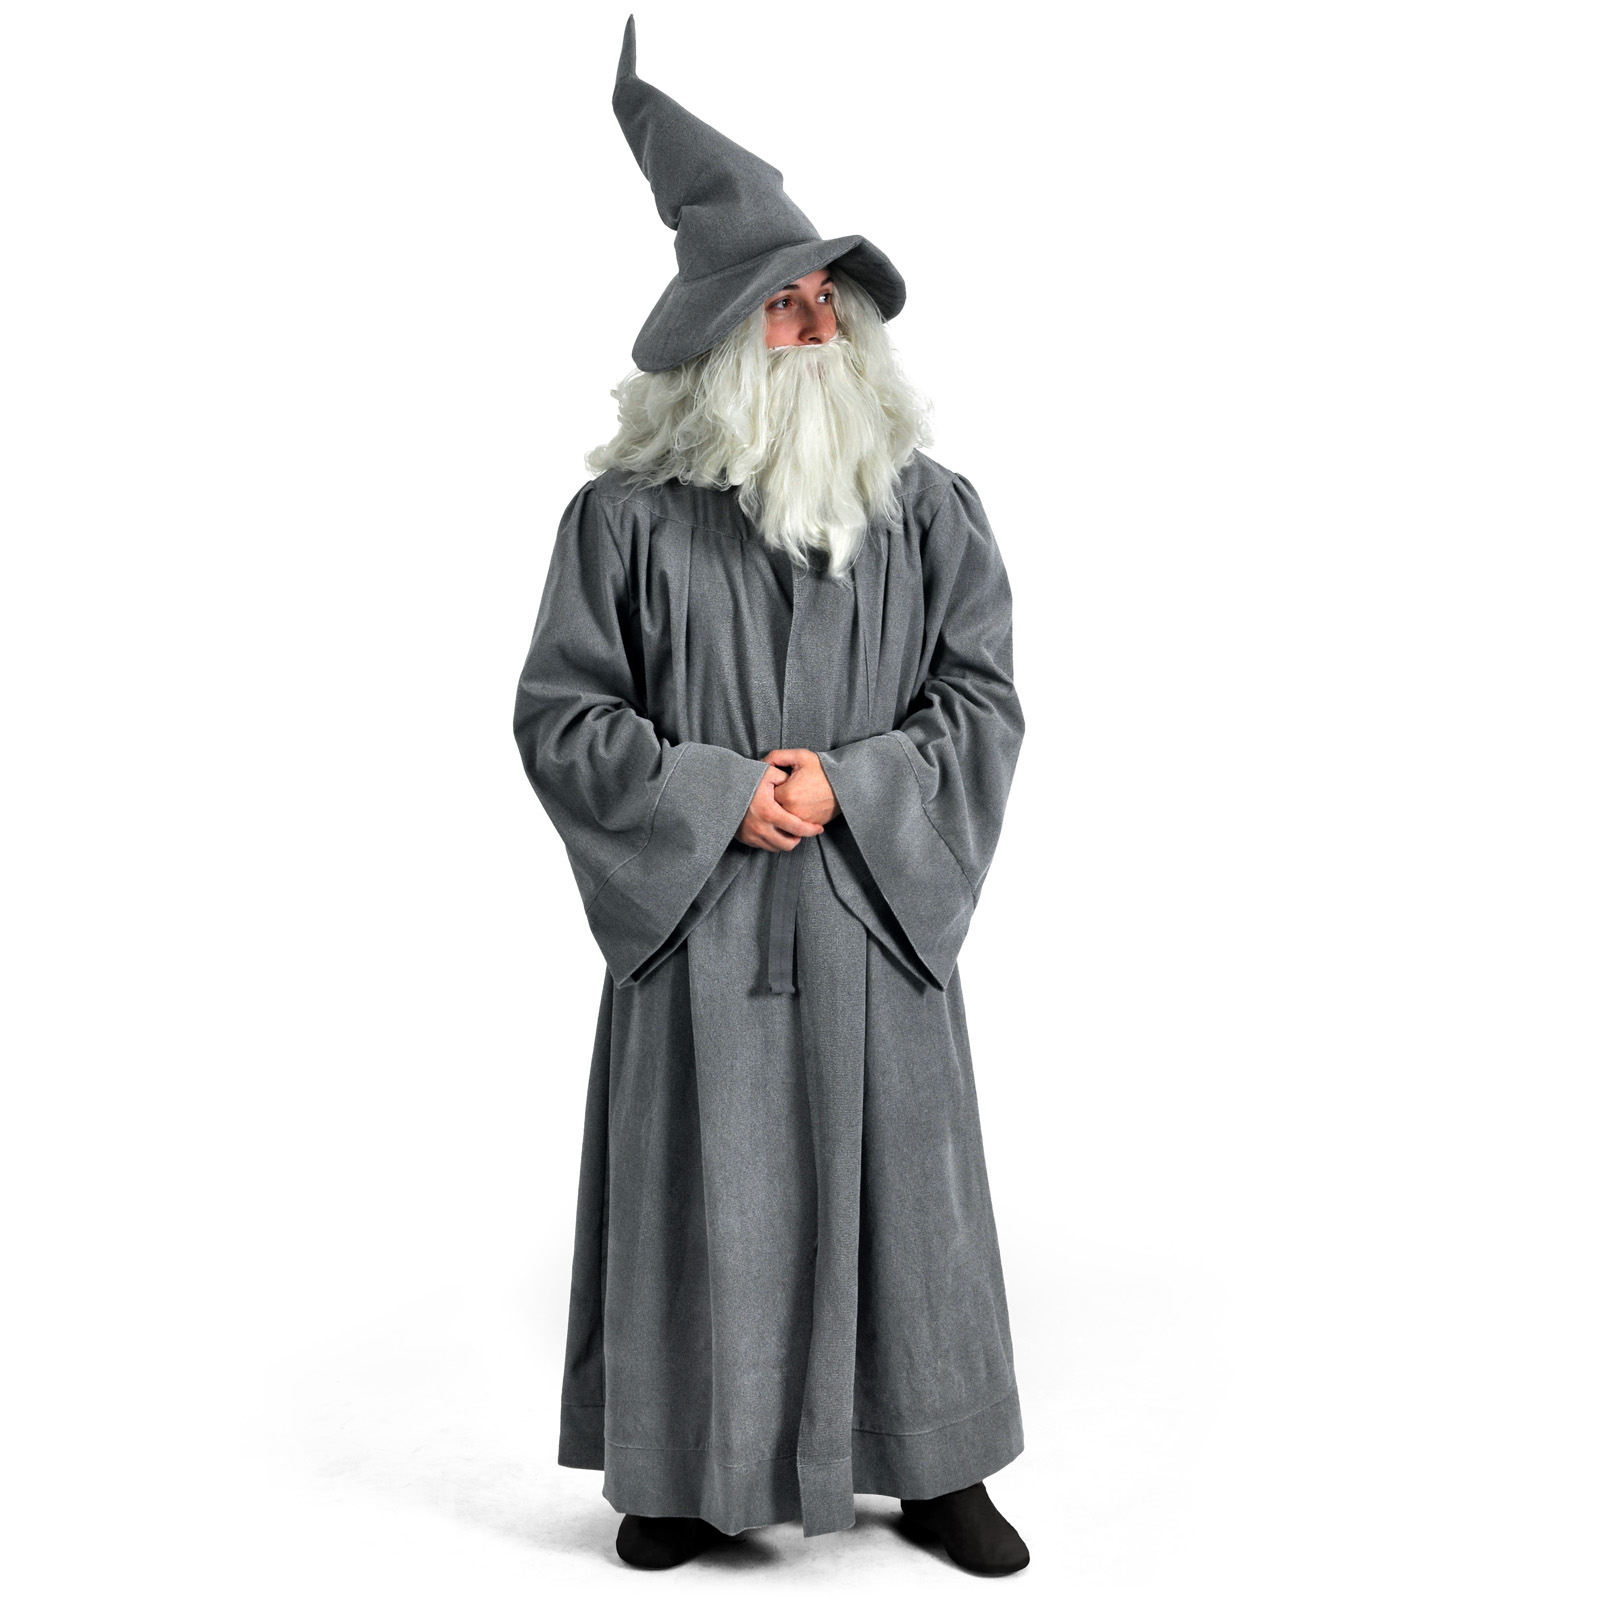 Gandalf cloak with belt